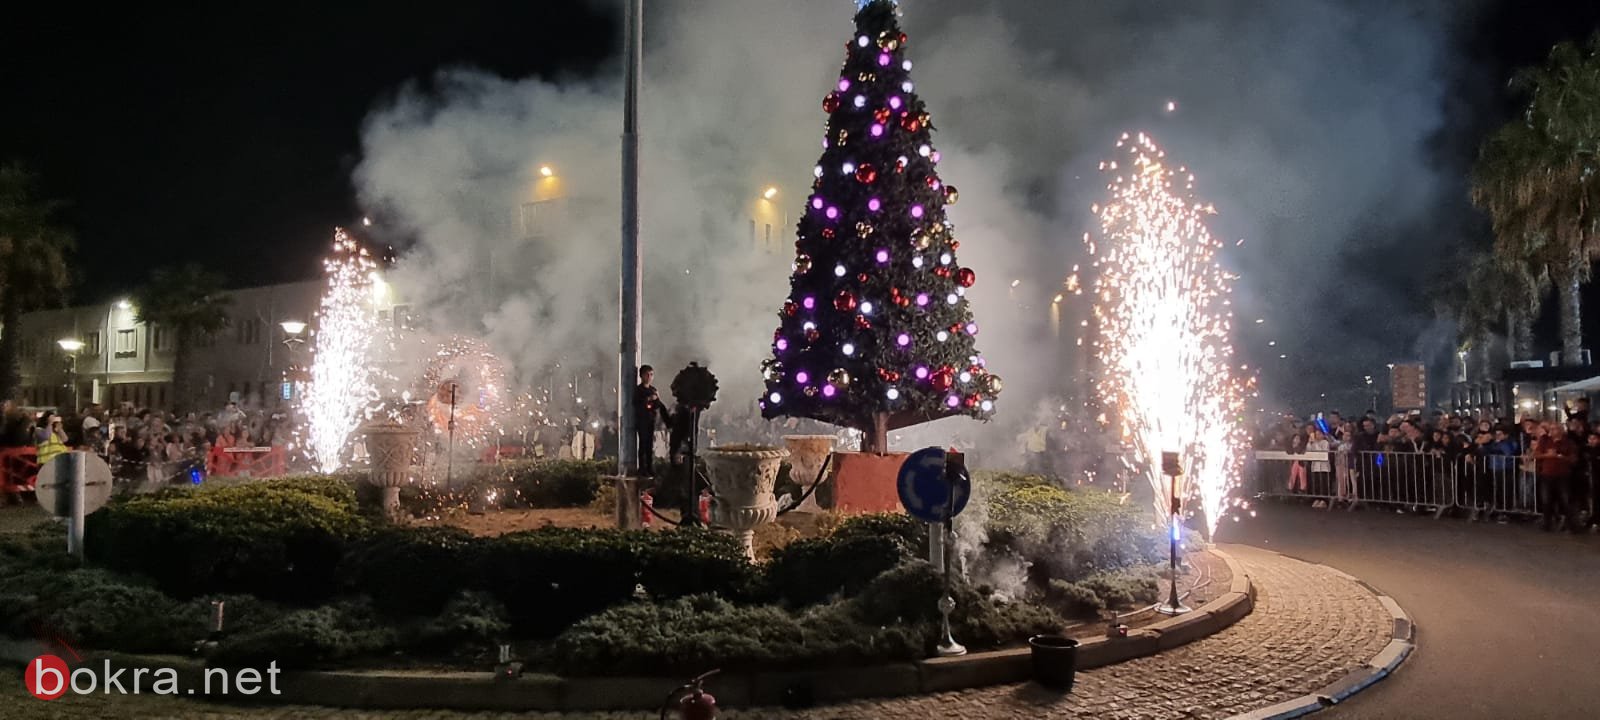 صور رائعة من احتفال عكا بإضاءة شجرة الميلاد-0